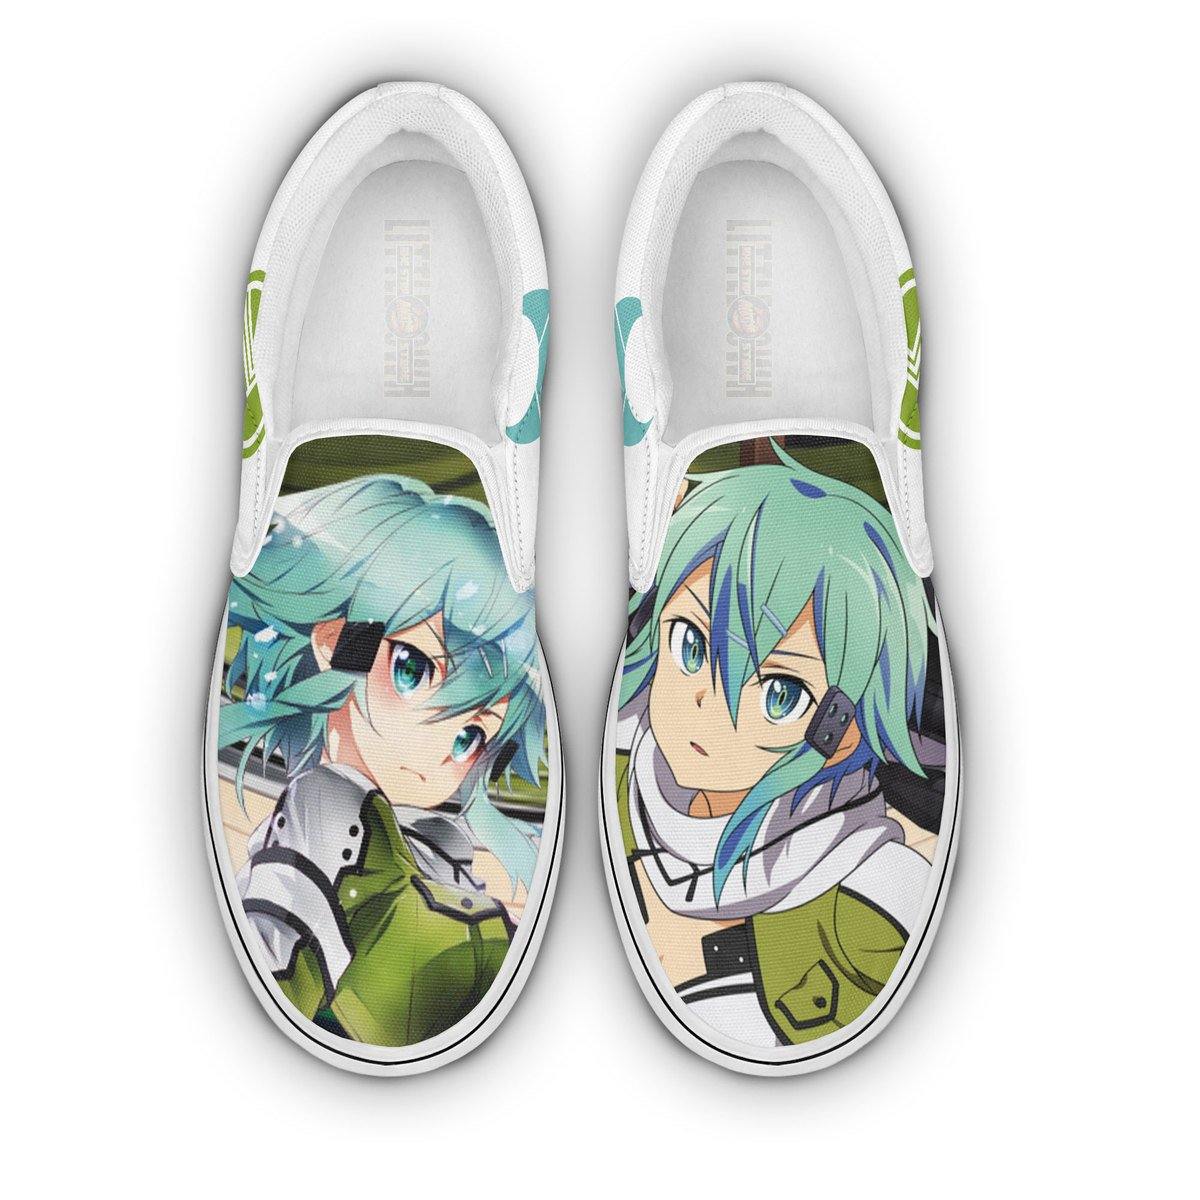 Sword Art Online Sinon Shoes Custom Anime Classic Slip-On Sneakers